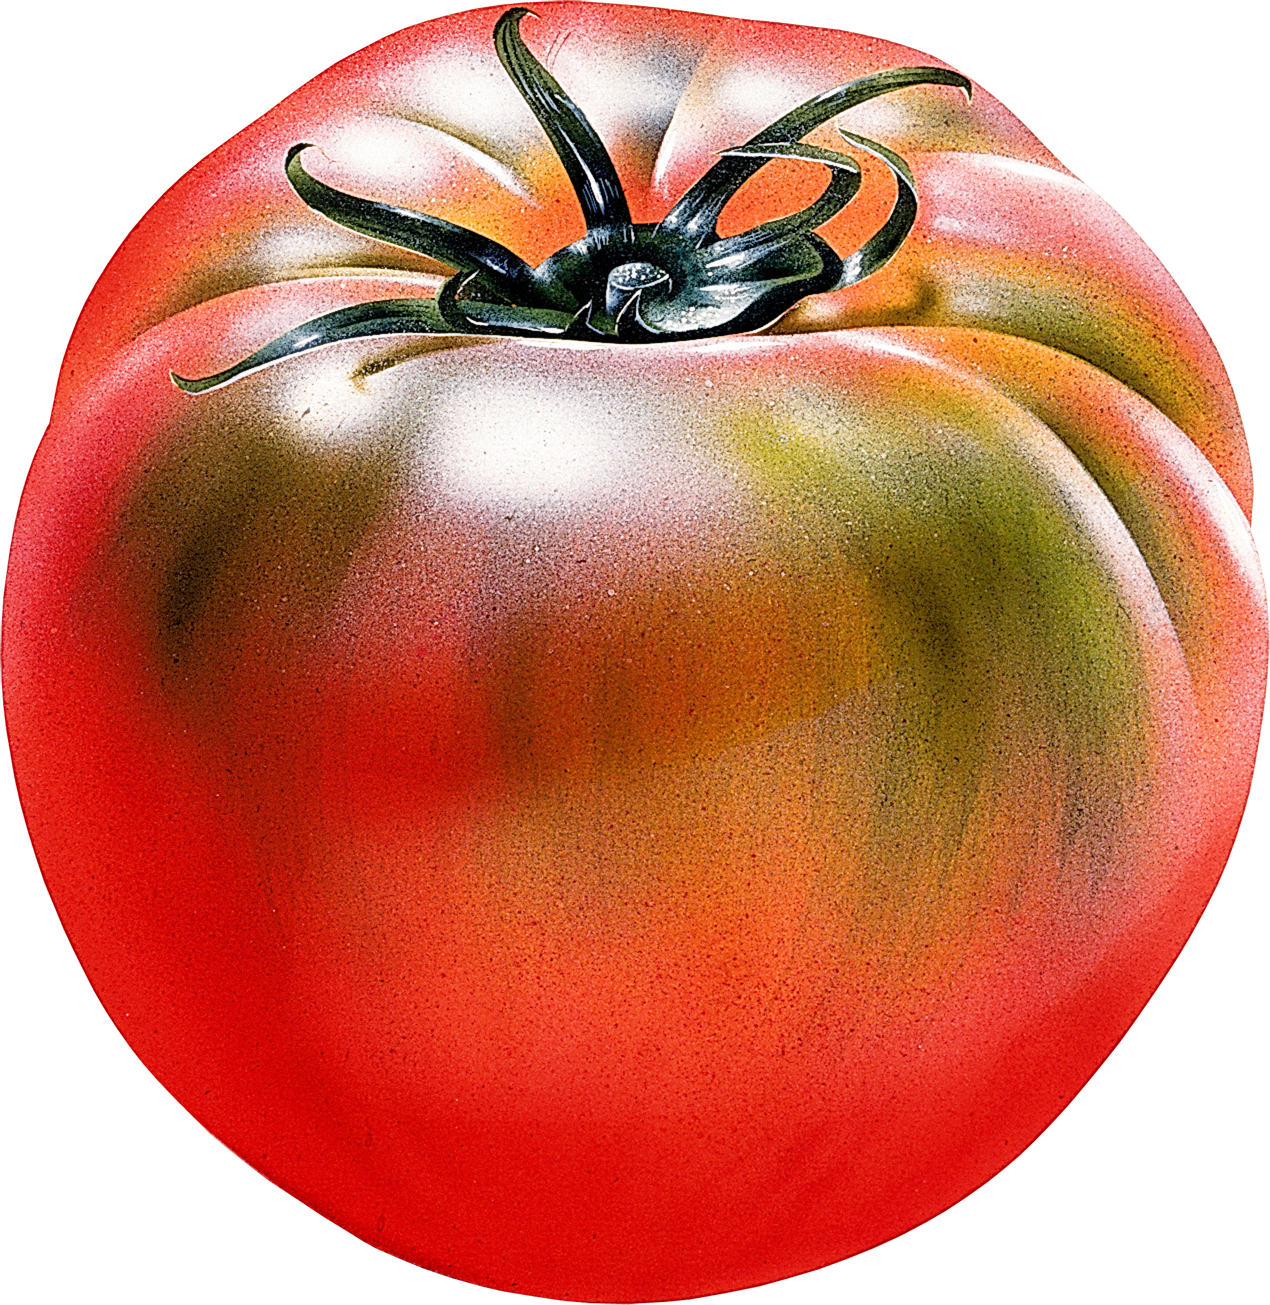 Duże świeże pomidory